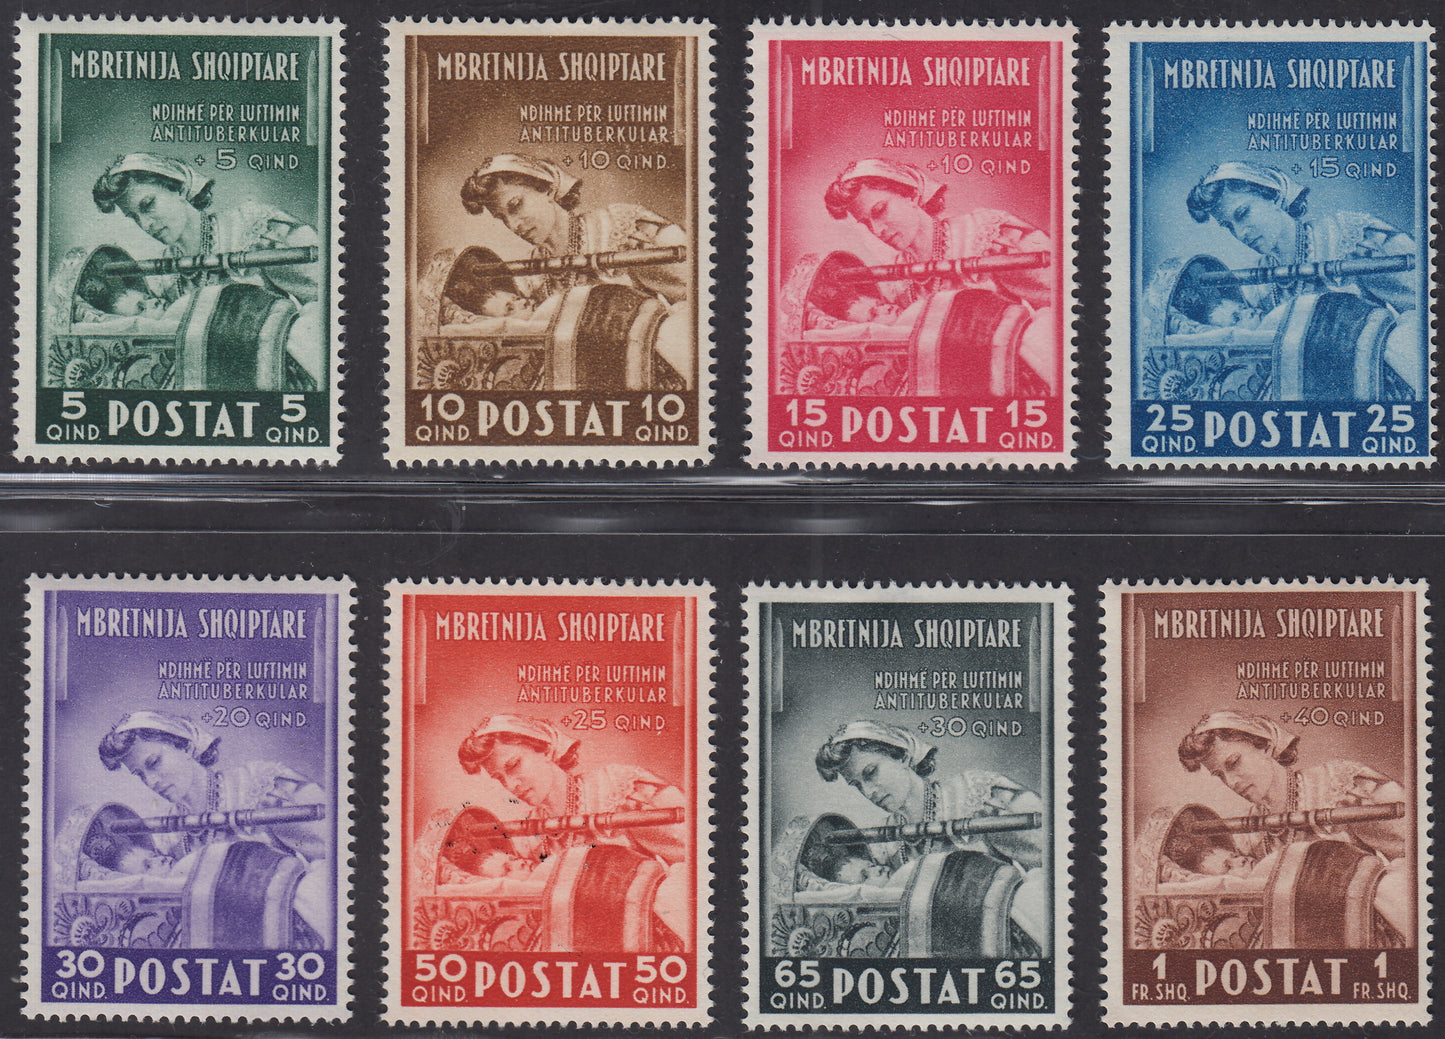 1943 - Obras pro antituberculosas de Albania, juego completo de 8 sellos, nuevos con caucho original (38/45)